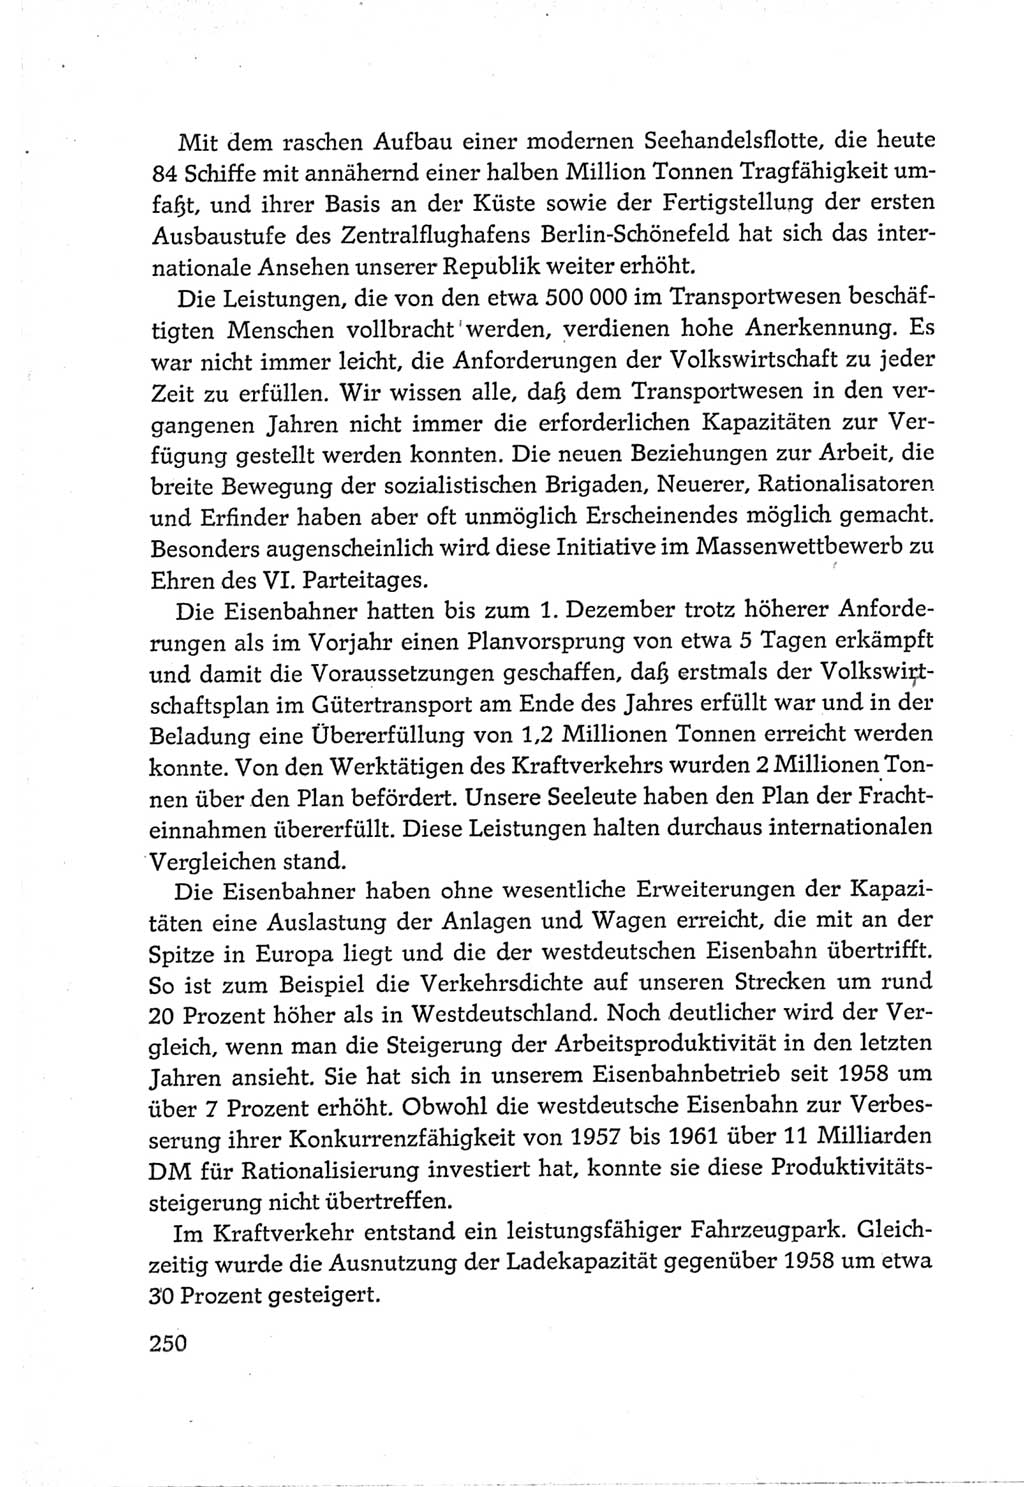 Protokoll der Verhandlungen des Ⅵ. Parteitages der Sozialistischen Einheitspartei Deutschlands (SED) [Deutsche Demokratische Republik (DDR)] 1963, Band Ⅲ, Seite 250 (Prot. Verh. Ⅵ. PT SED DDR 1963, Bd. Ⅲ, S. 250)